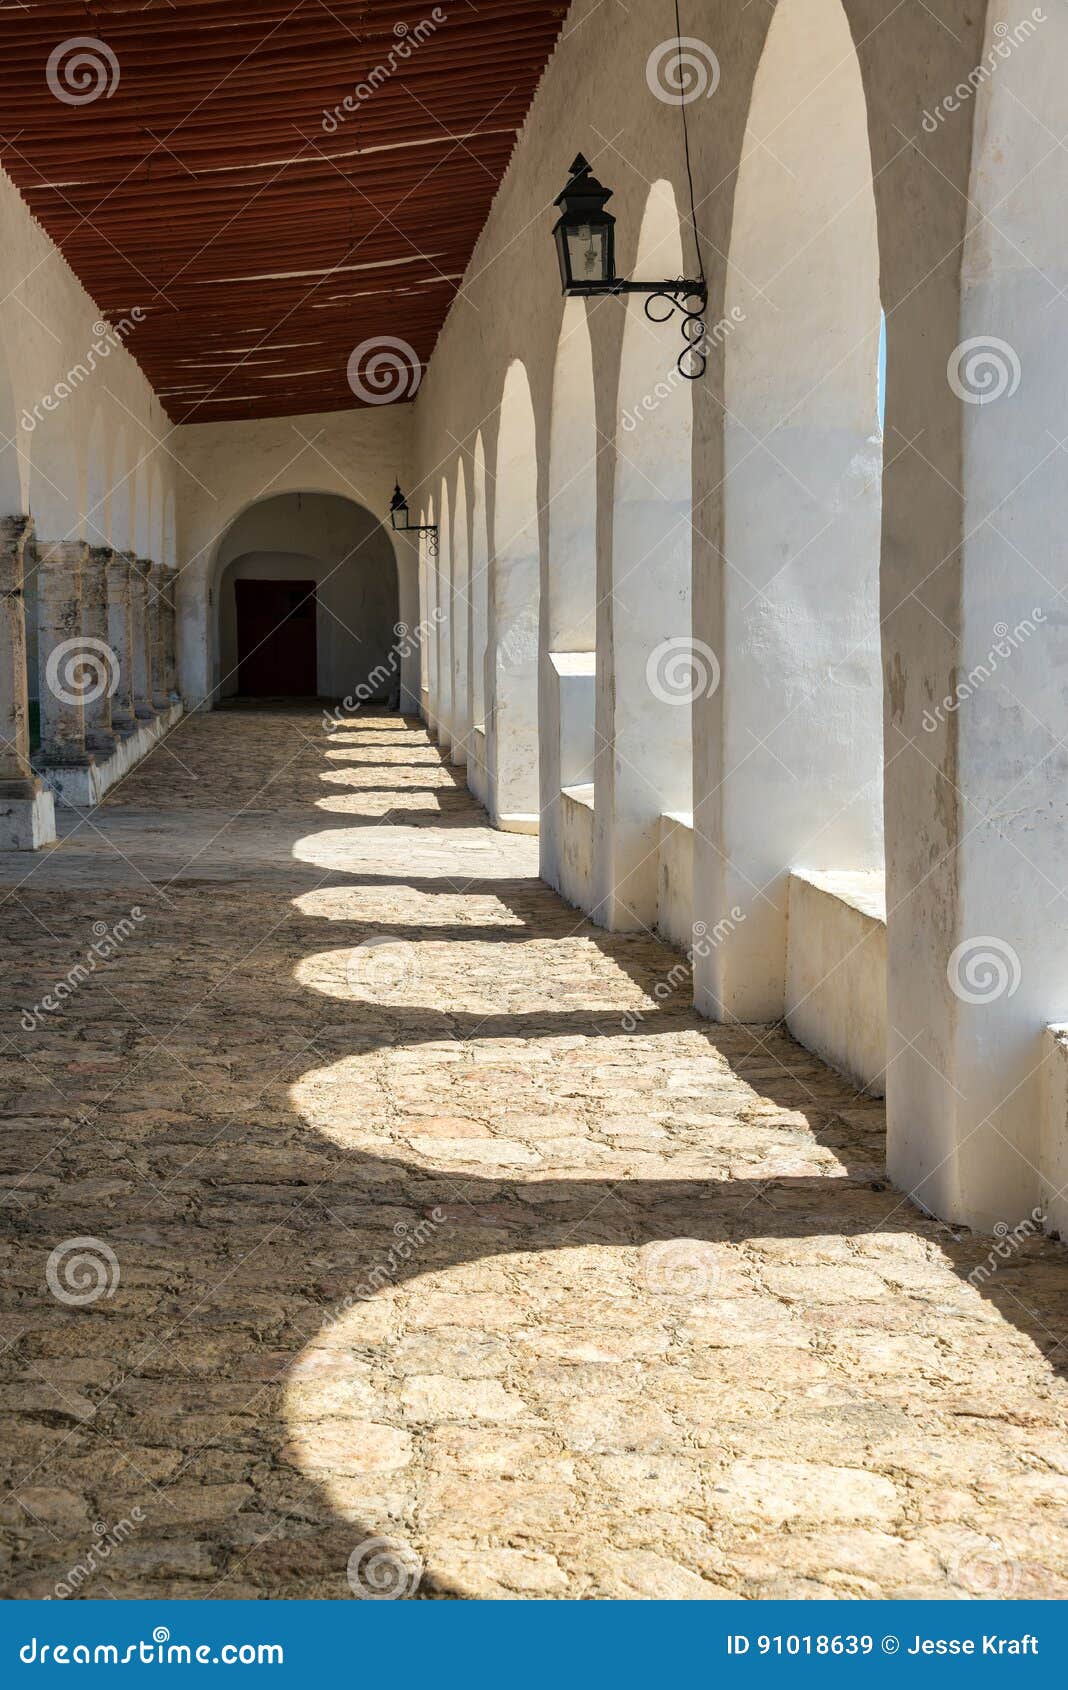 izamal monastery corridor